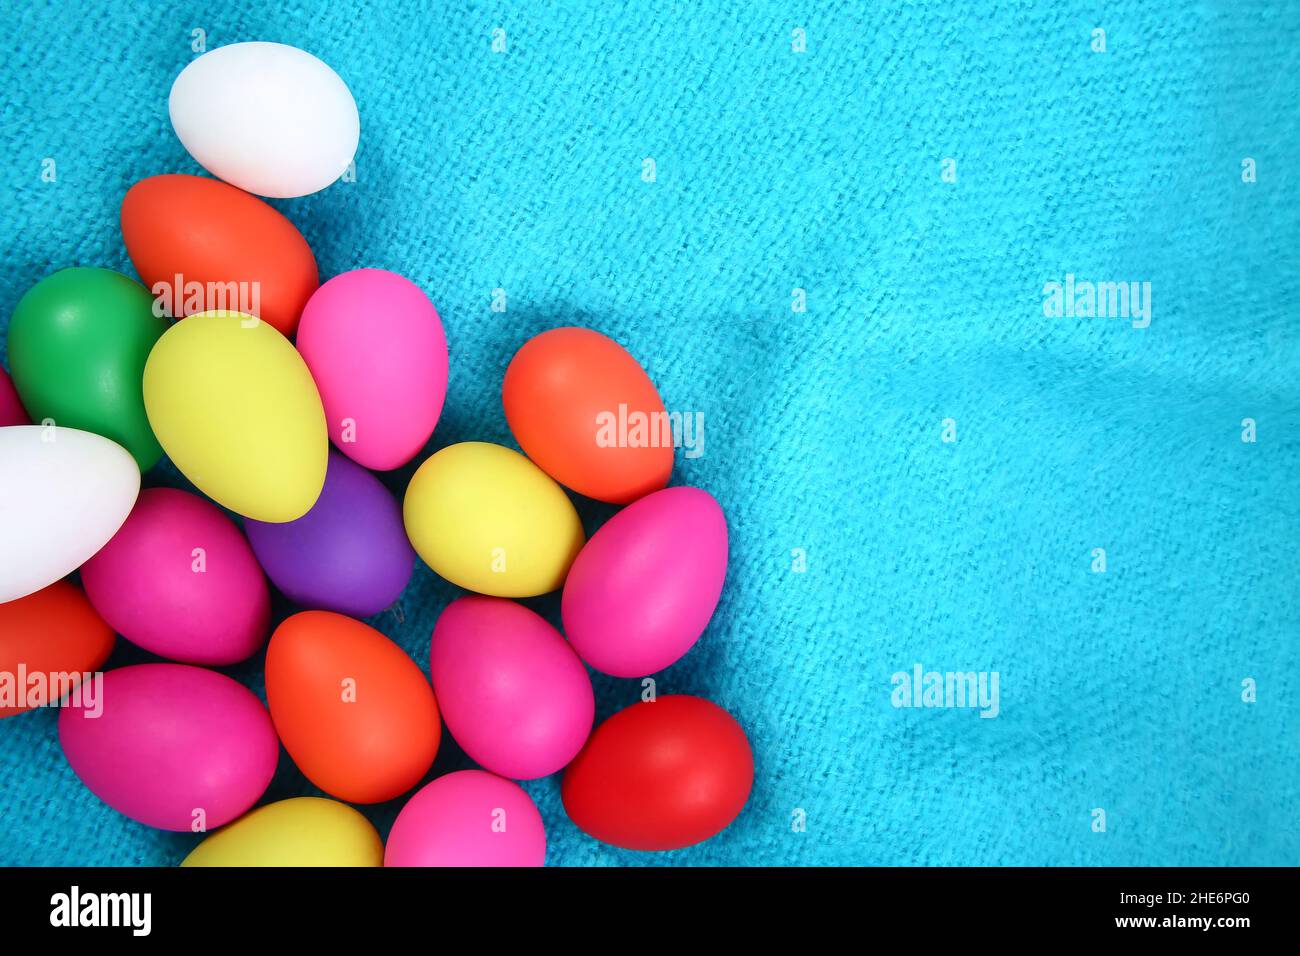 Bunt bemalte Ostereier in rosa, gelb, rot, grün, lila und weiß vor einem hellblauen Wolldecke Hintergrund. Stockfoto